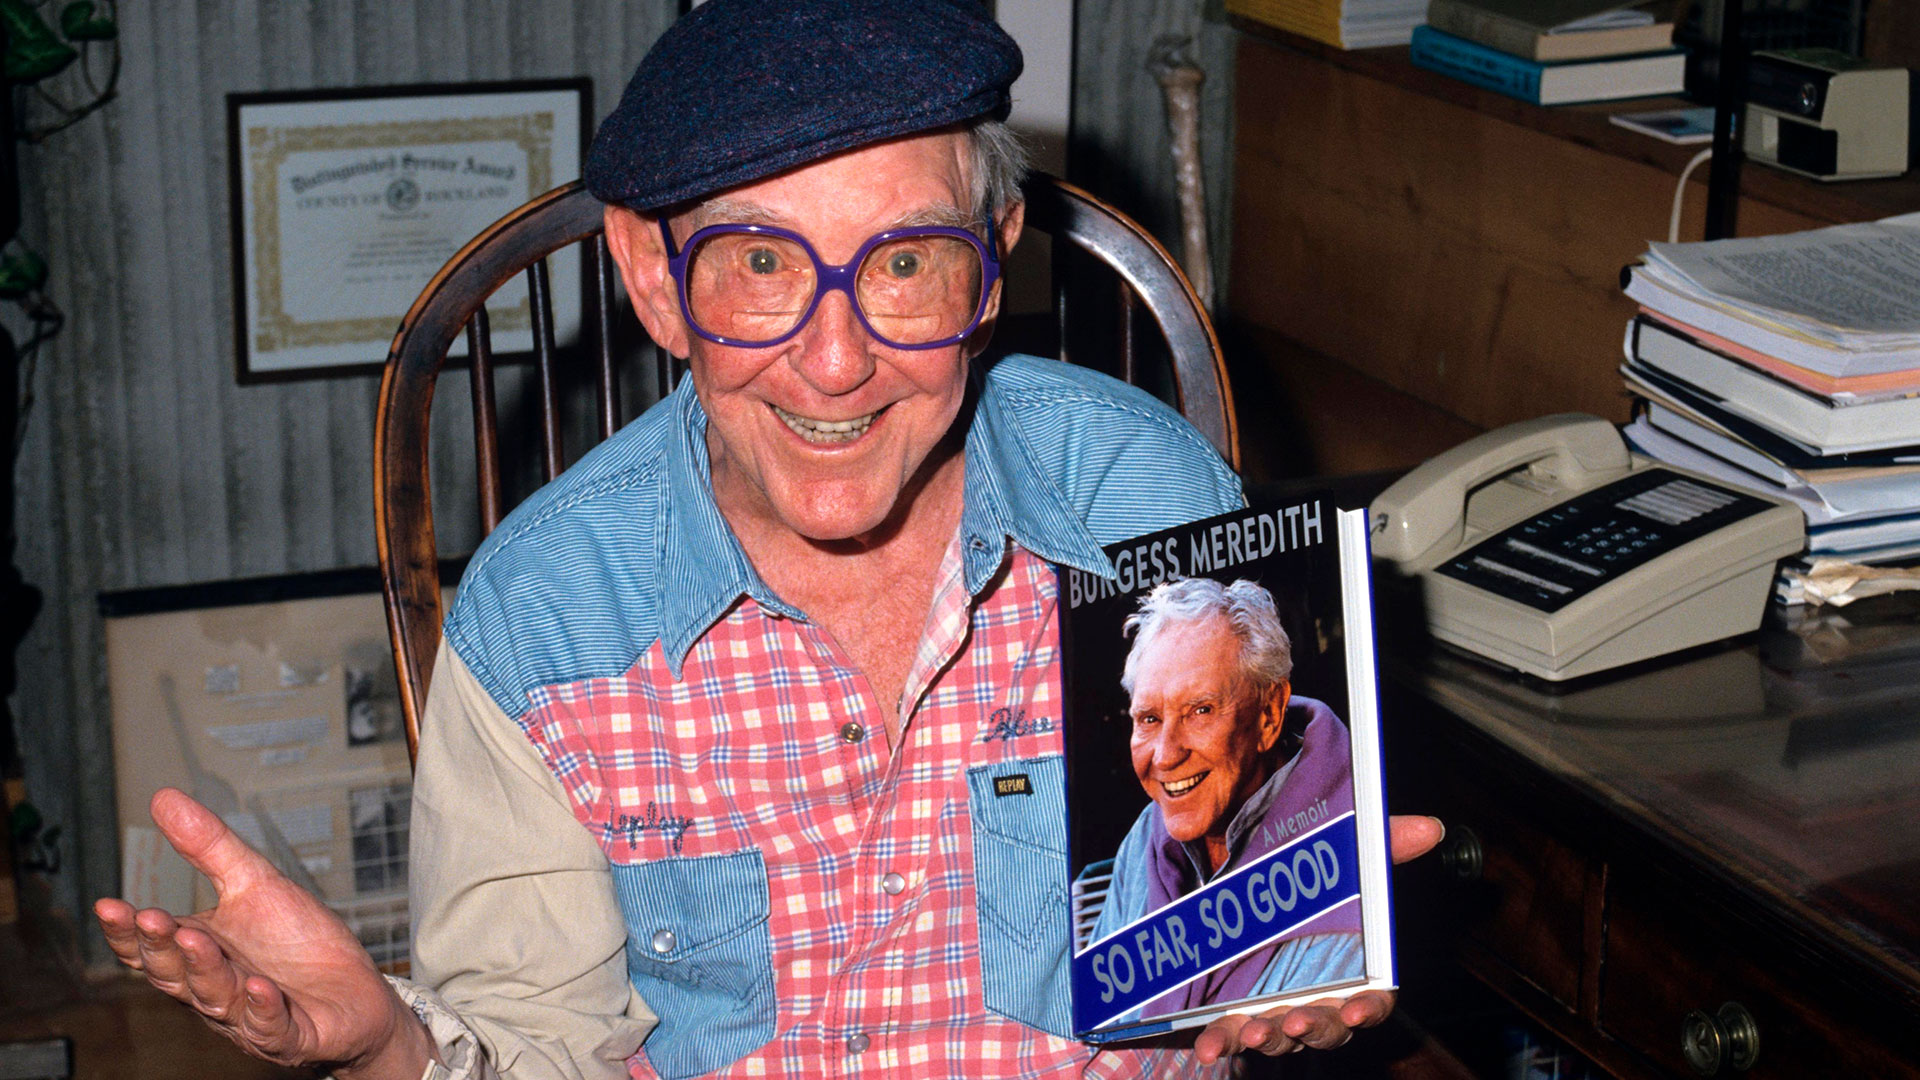 Burgess Meredith en sus últimos años, con su autobiografía en mano (Foto: Shutterstock)